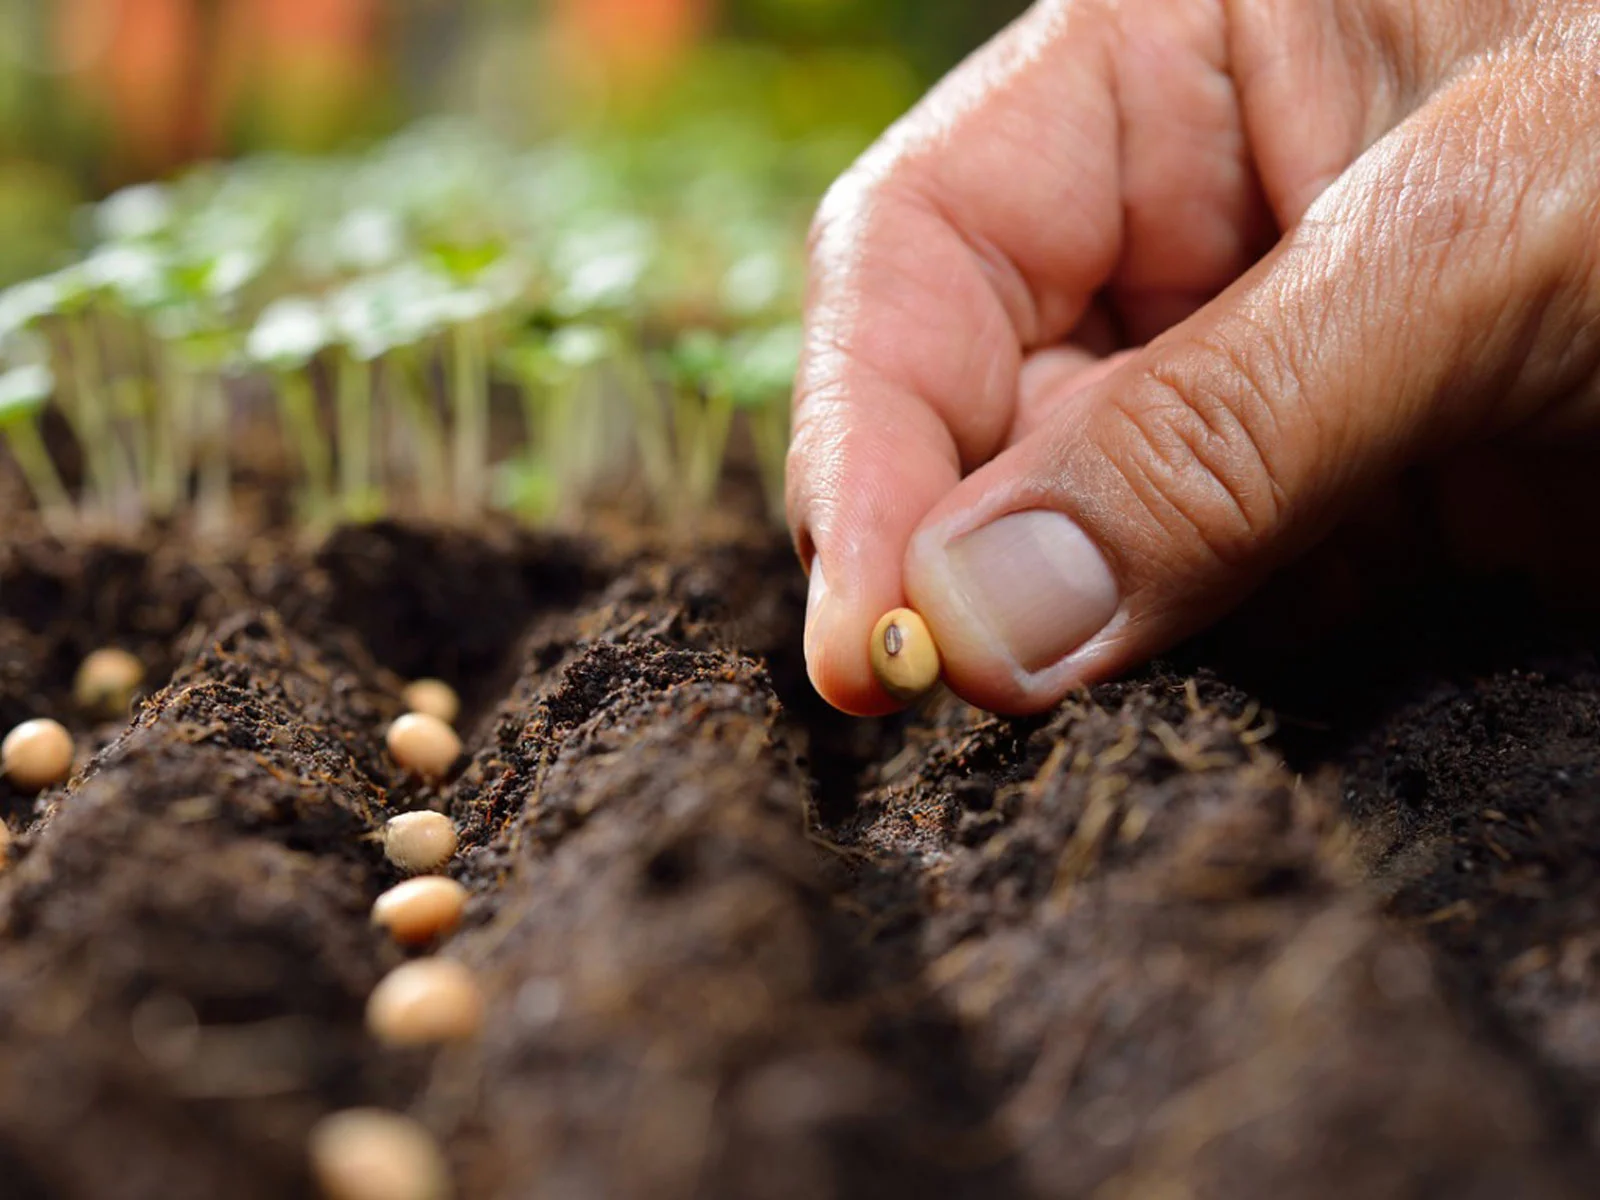 How Do You Plant Seeds